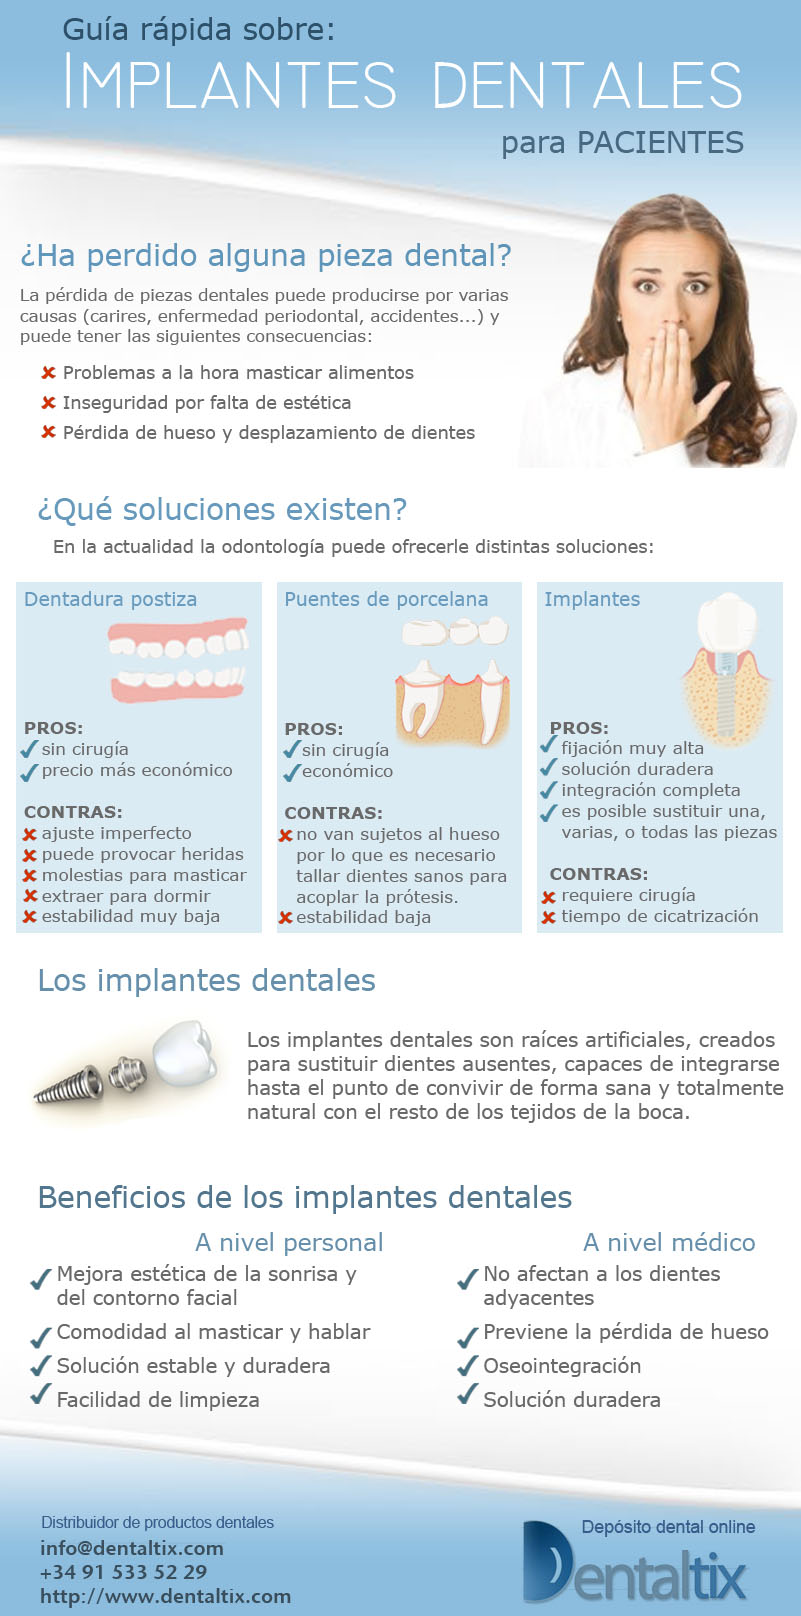 Guide sur les implants dentaires pour les patients. 